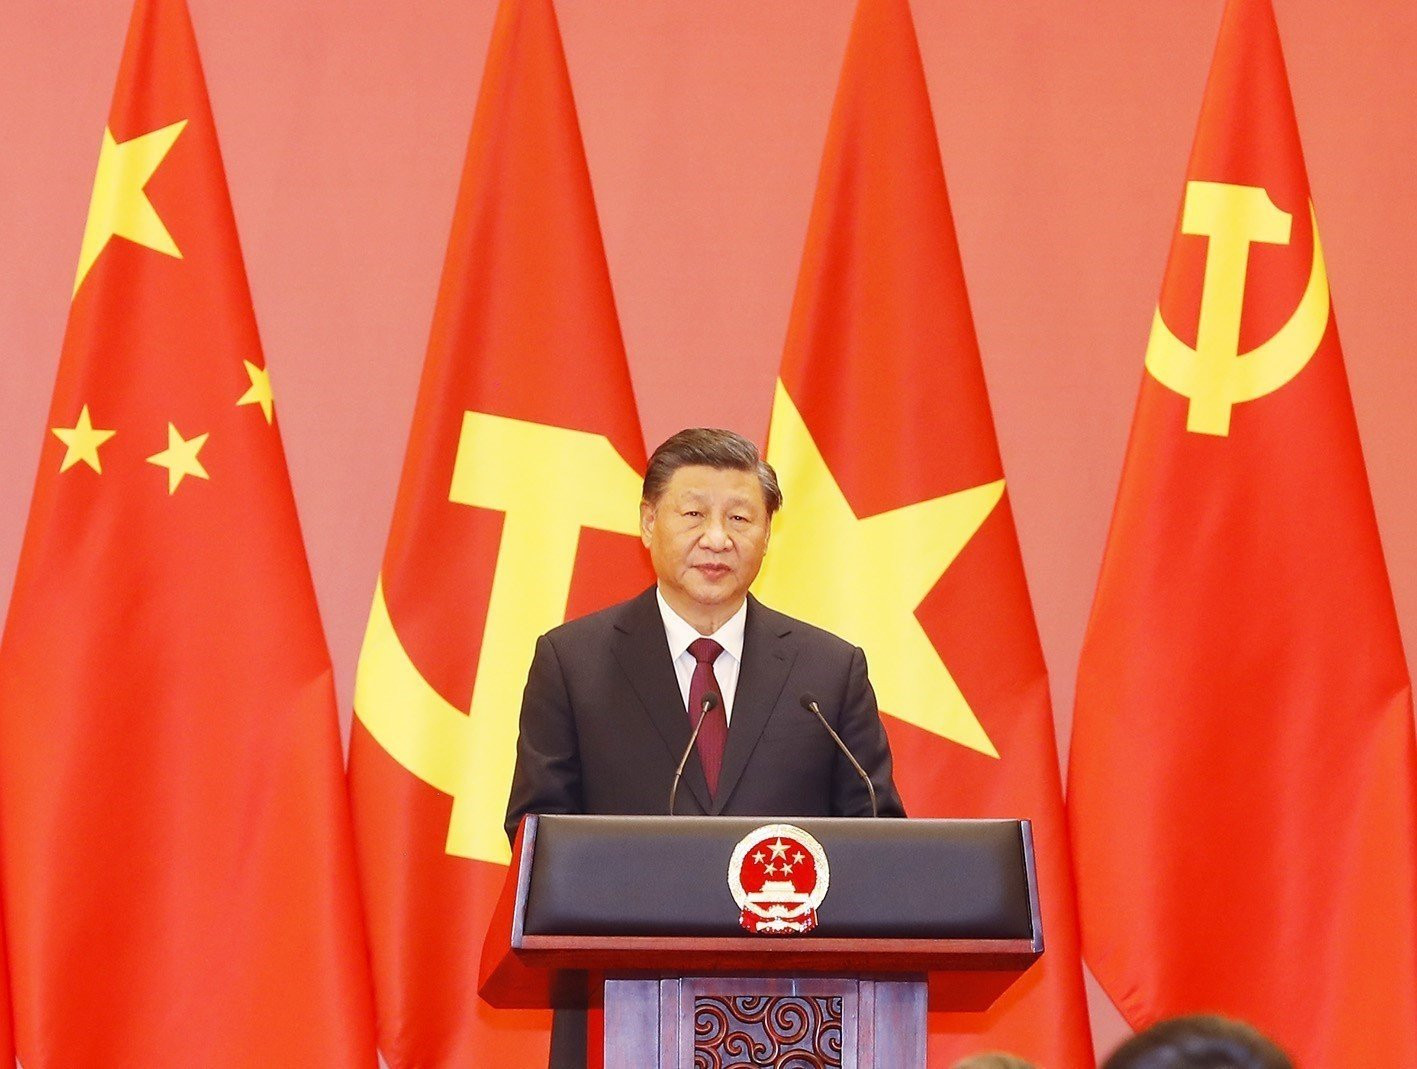 Trung Quốc trao huân chương đối ngoại cao quý nhất cho Tổng Bí thư Nguyễn Phú Trọng